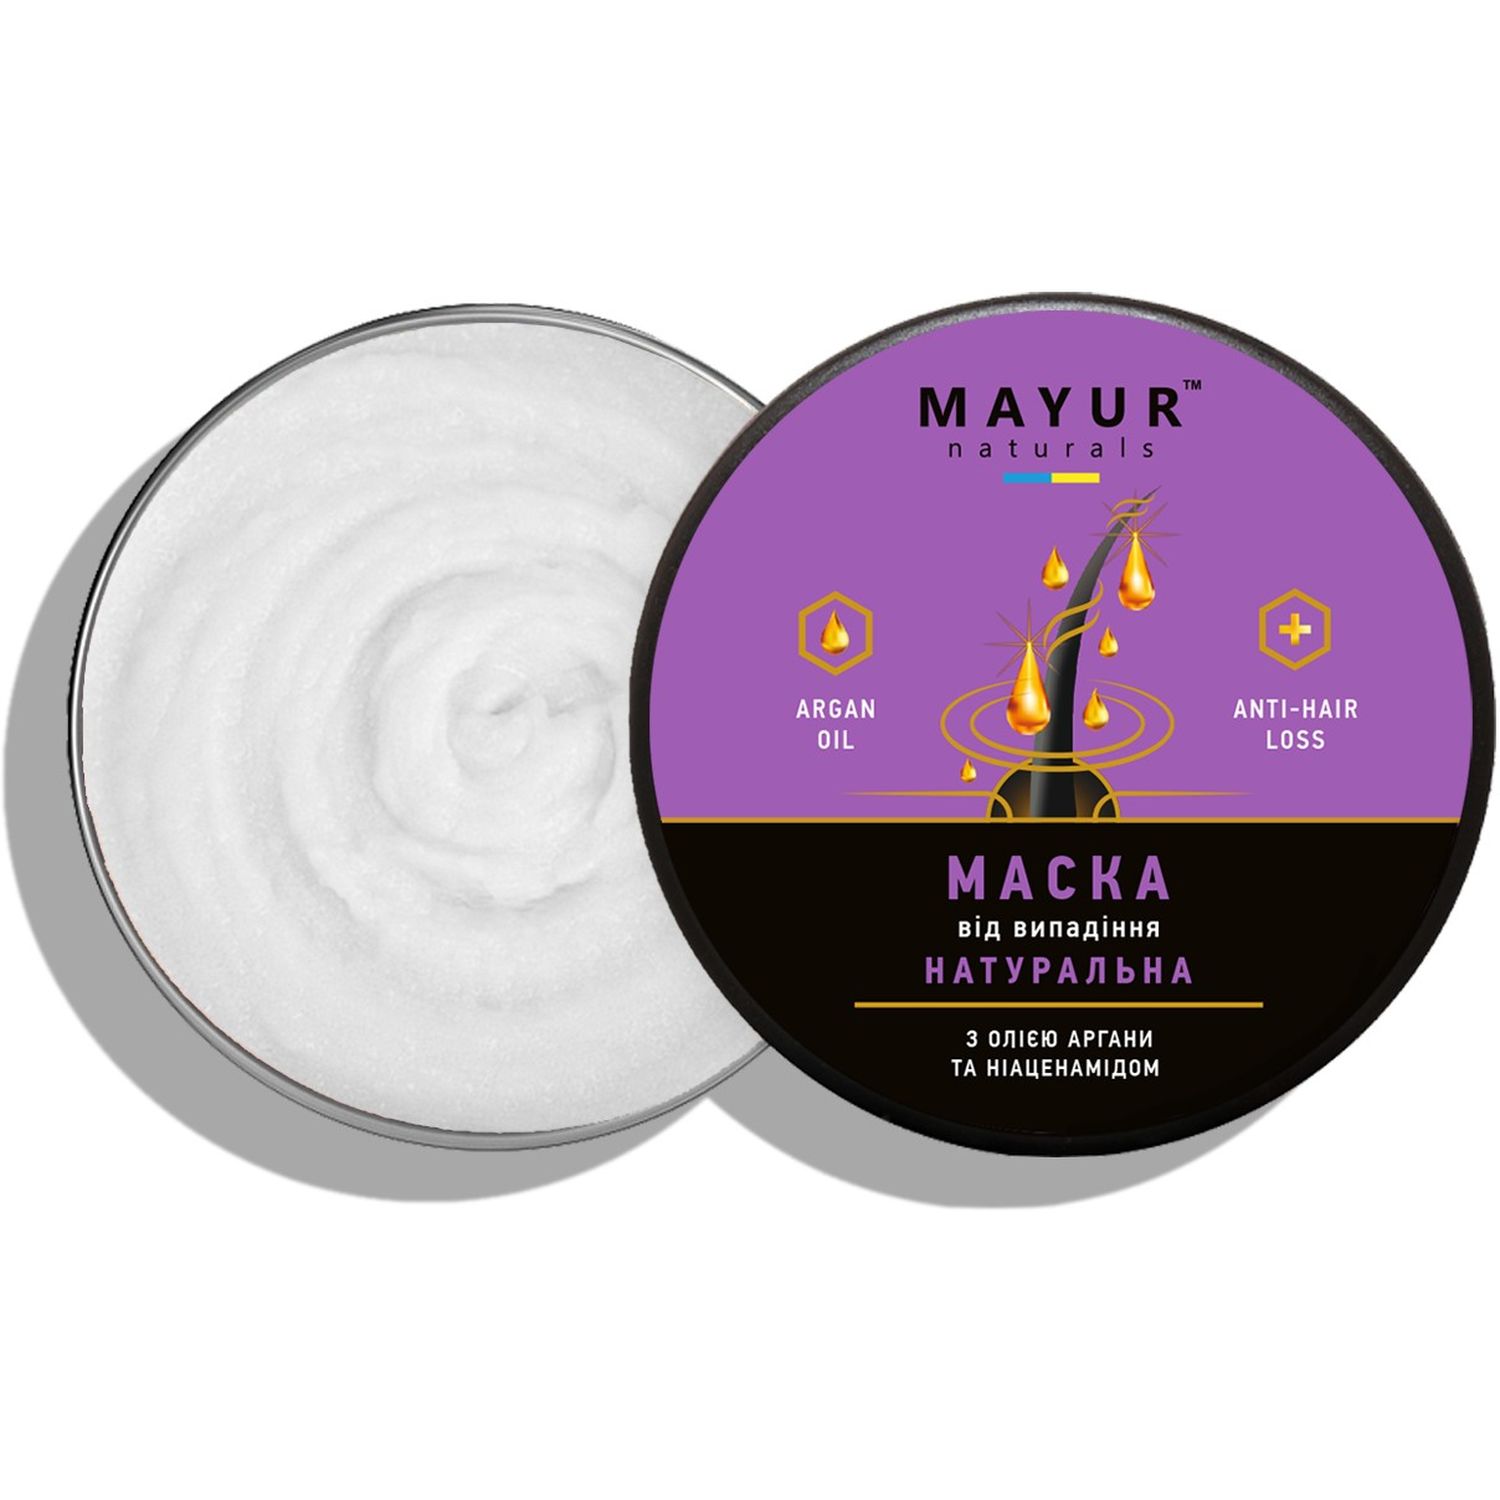 Маска для волос Mayur натуральная против выпадения регенерирующая с аргановым маслом и ниаценамидом - фото 1